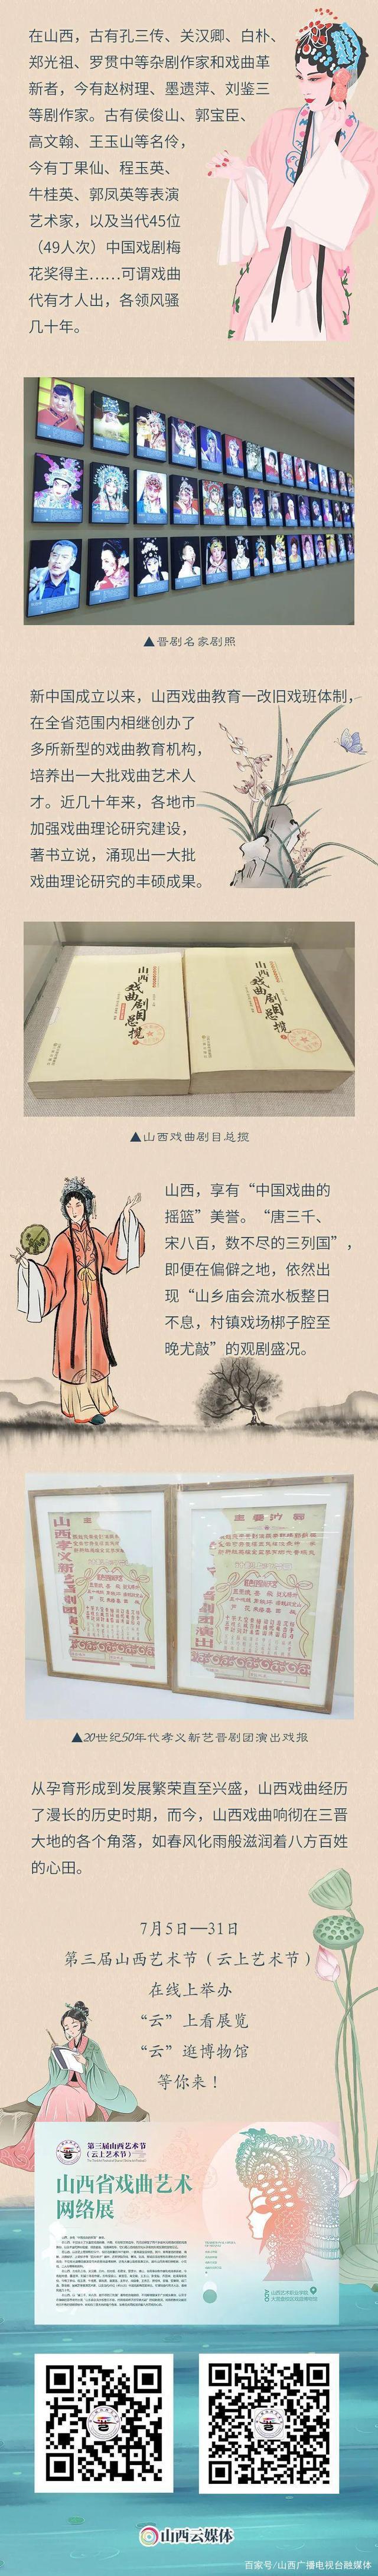 长图丨中国最早的“说唱艺人”是谁？来这里找答案